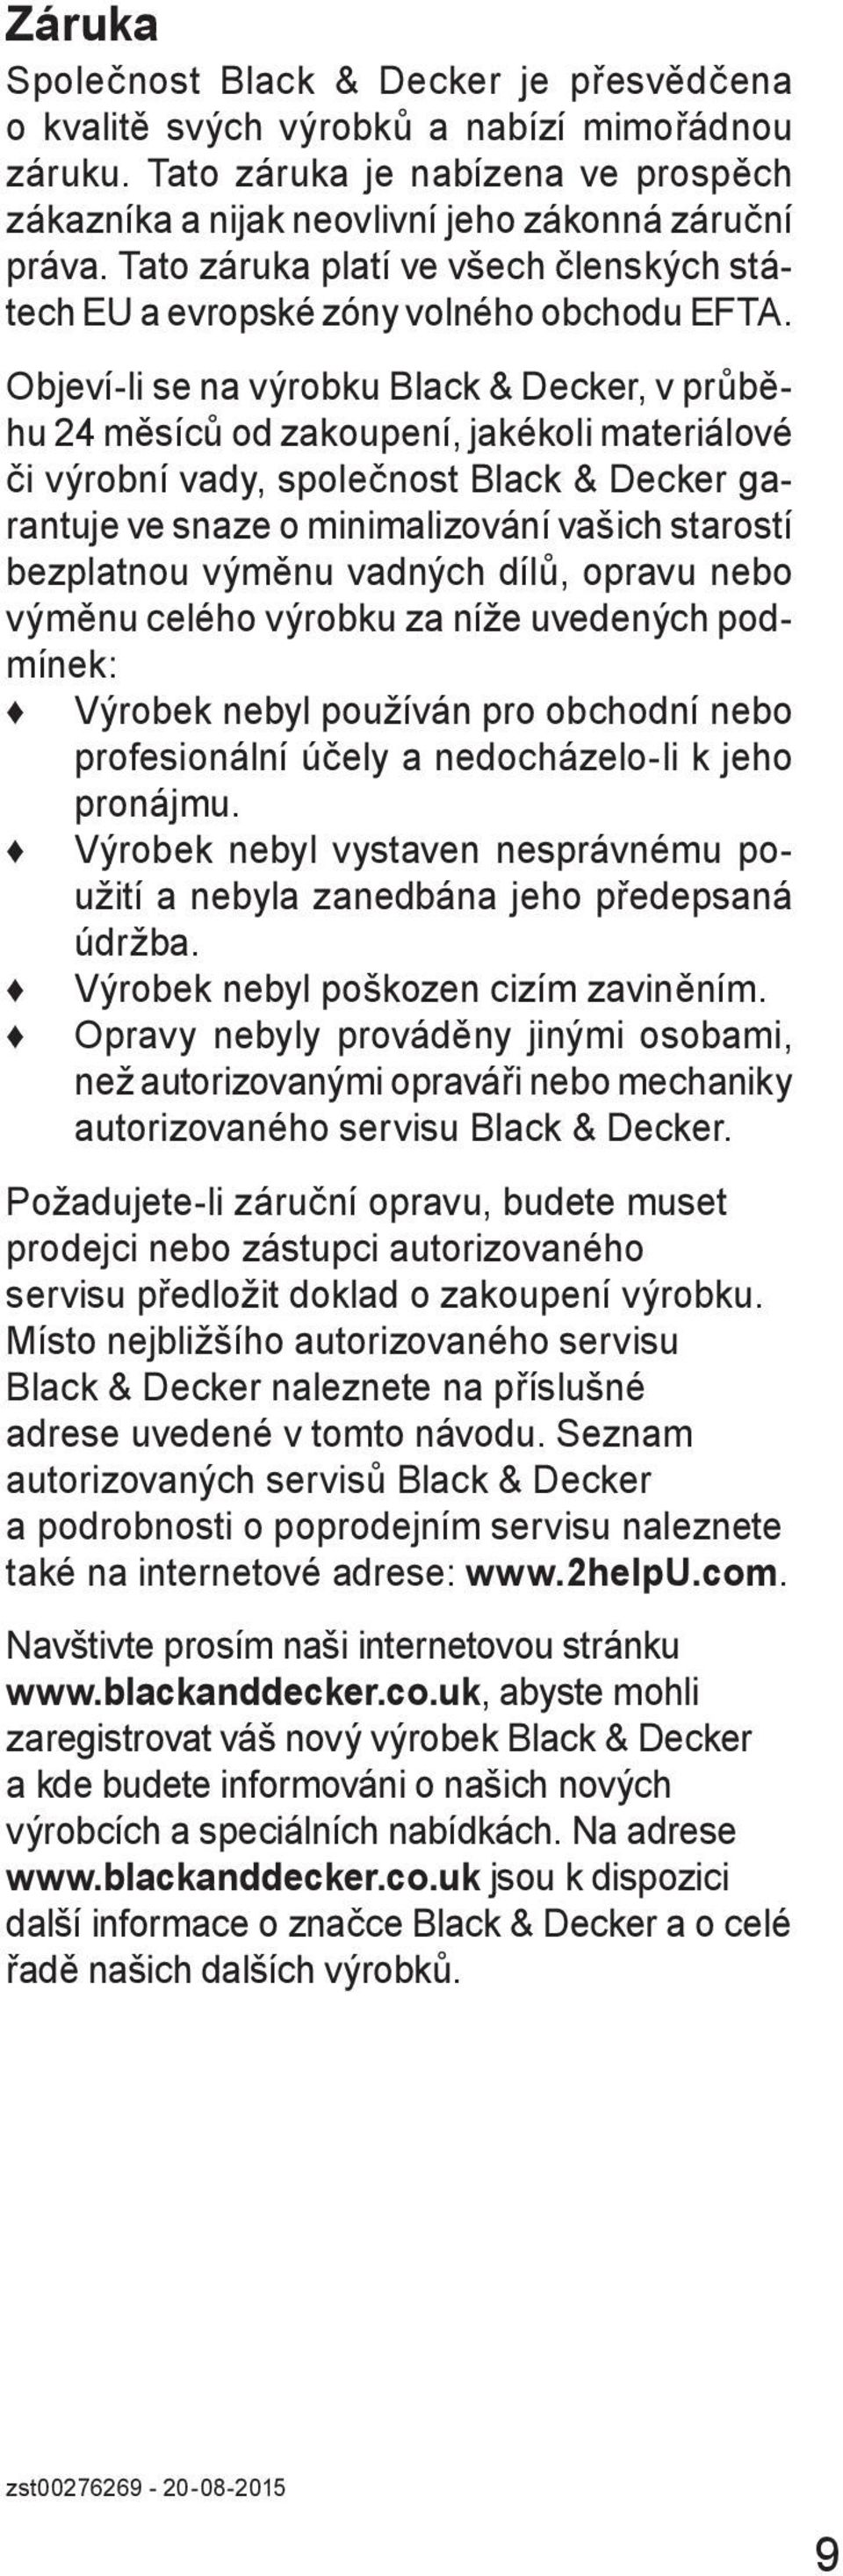 Objeví-li se na výrobku Black & Decker, v průběhu 24 měsíců od zakoupení, jakékoli materiálové či výrobní vady, společnost Black & Decker garantuje ve snaze o minimalizování vašich starostí